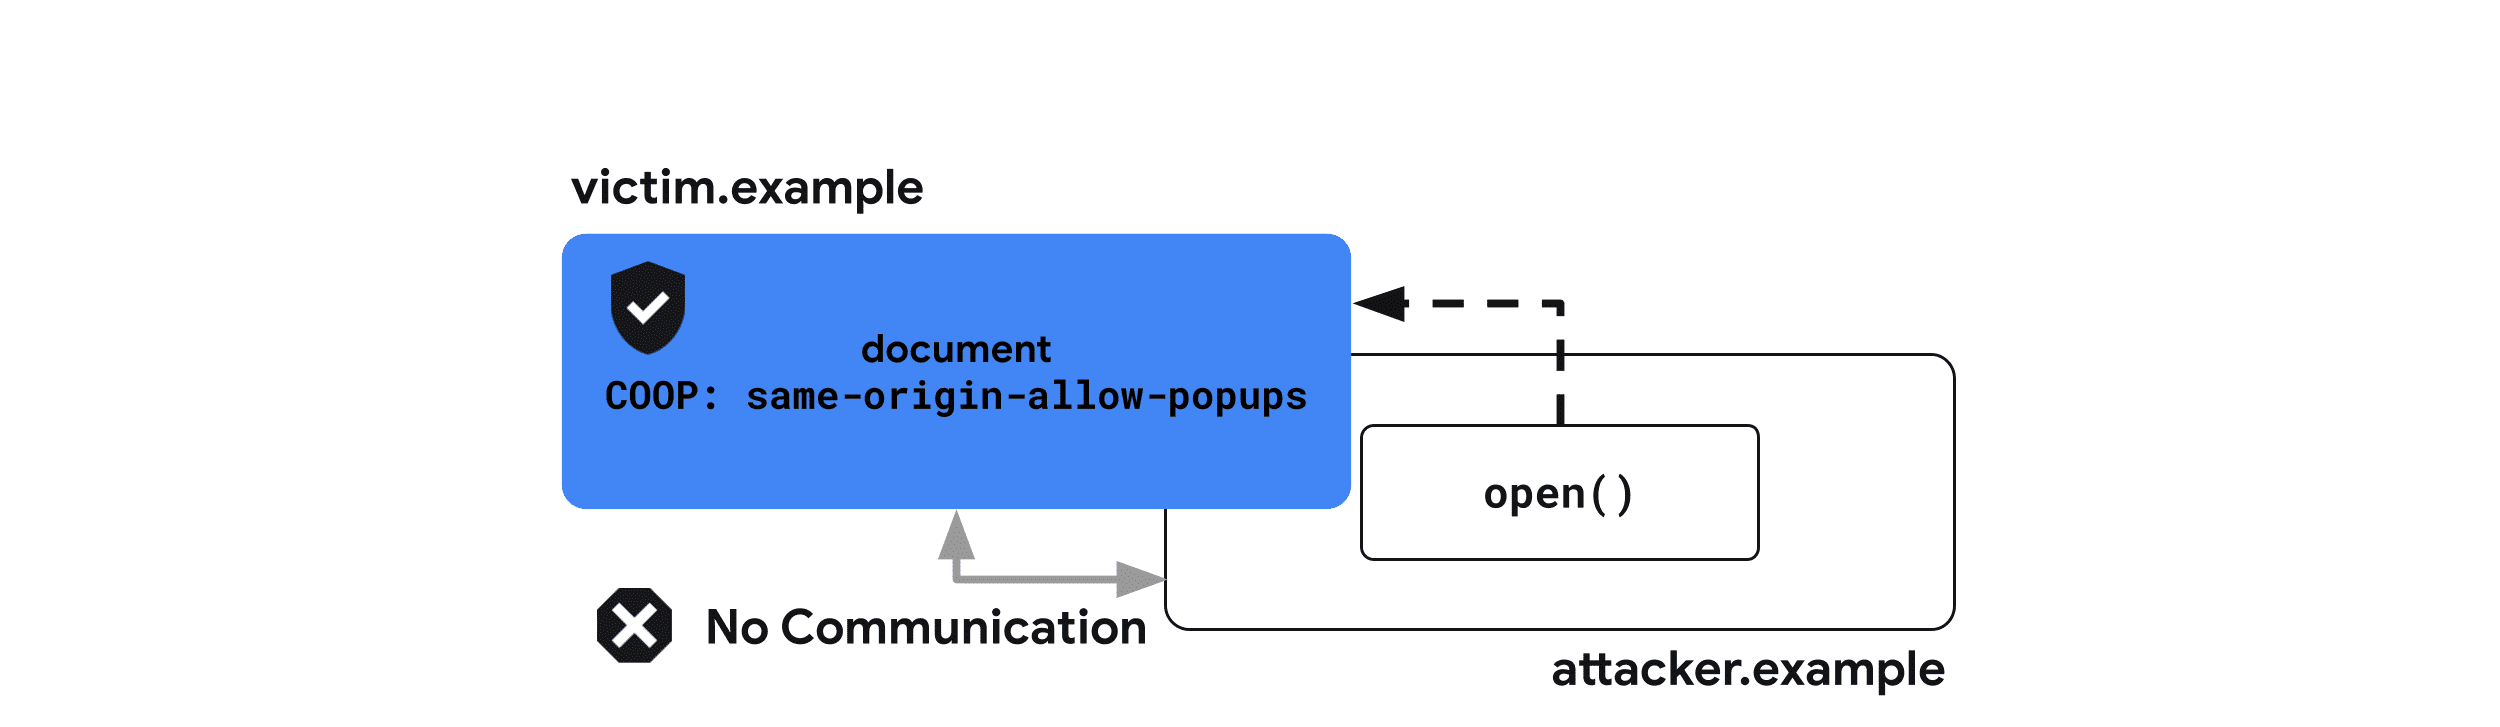 Cross-Origin-Opener-Policy: pop-up-izin-asal-yang sama